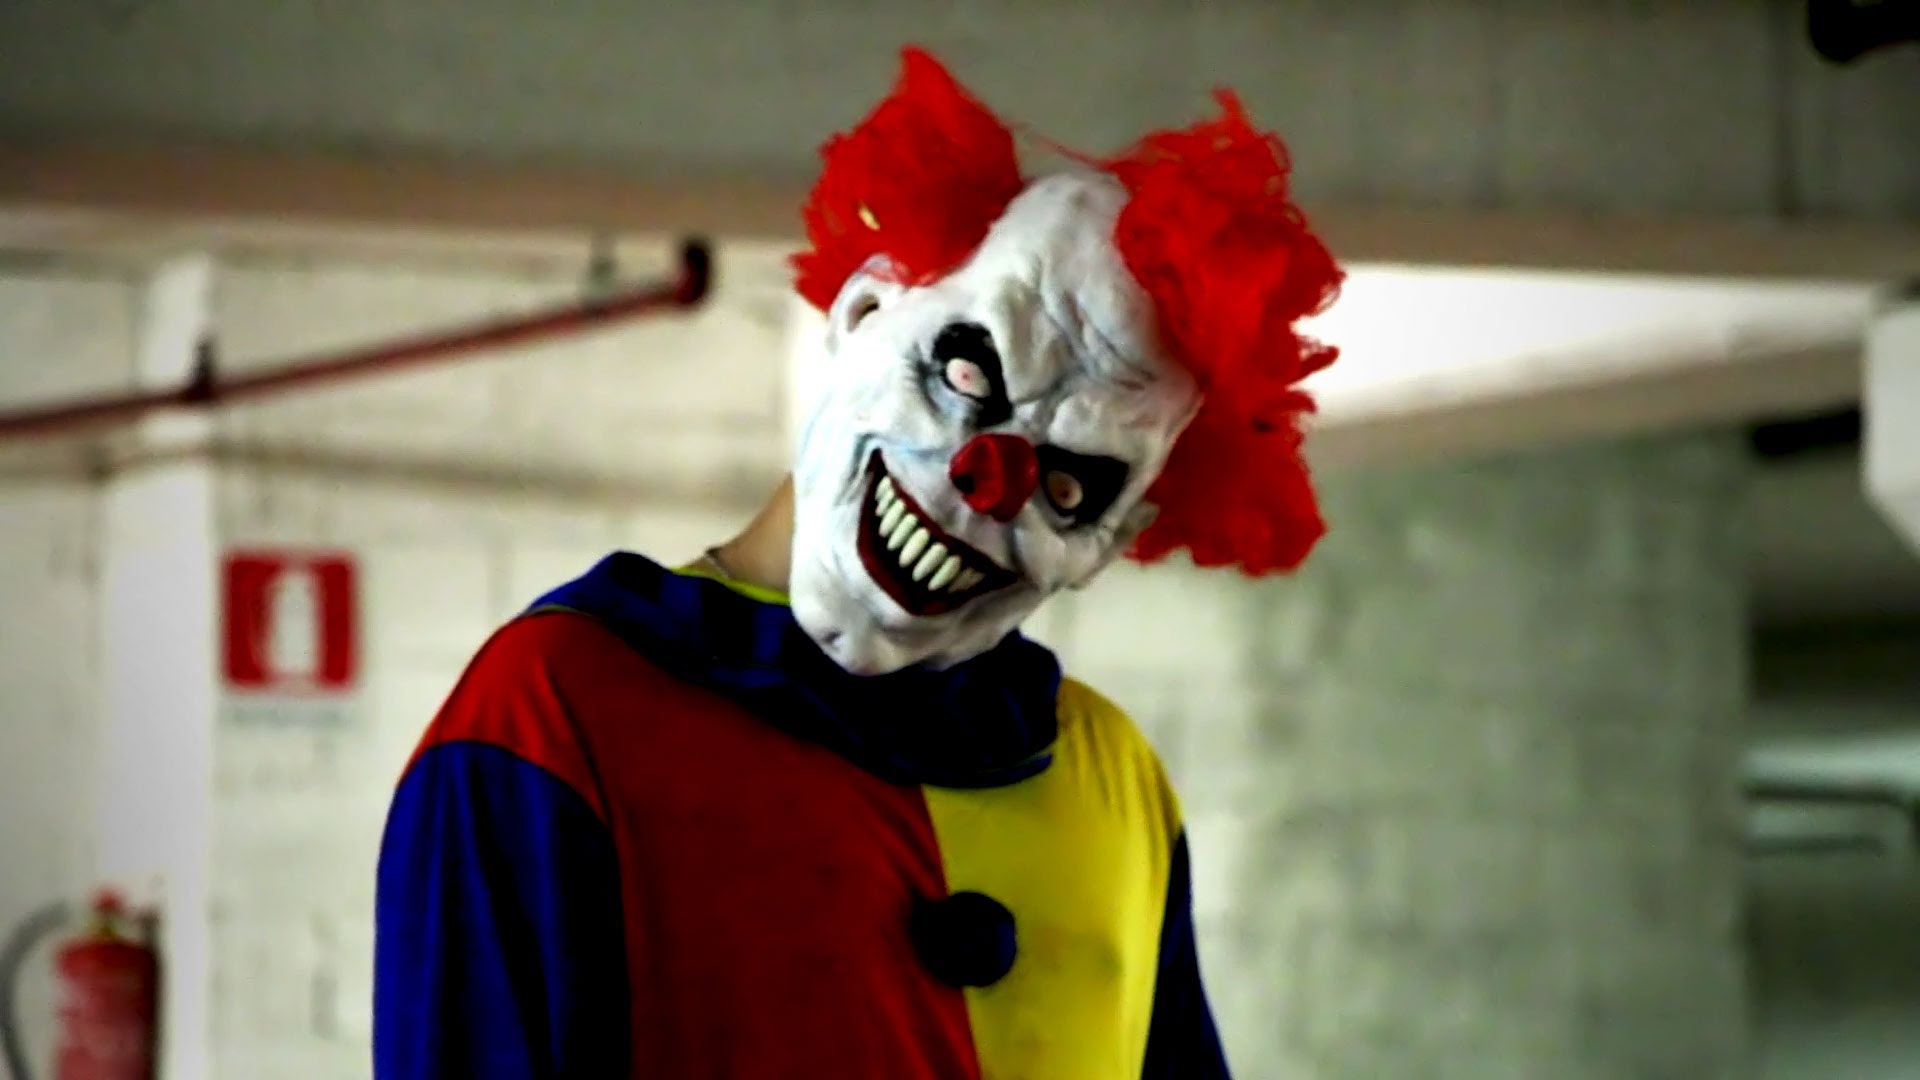 killer-clown-prank-2-video-auf-bildschirmarbeiter